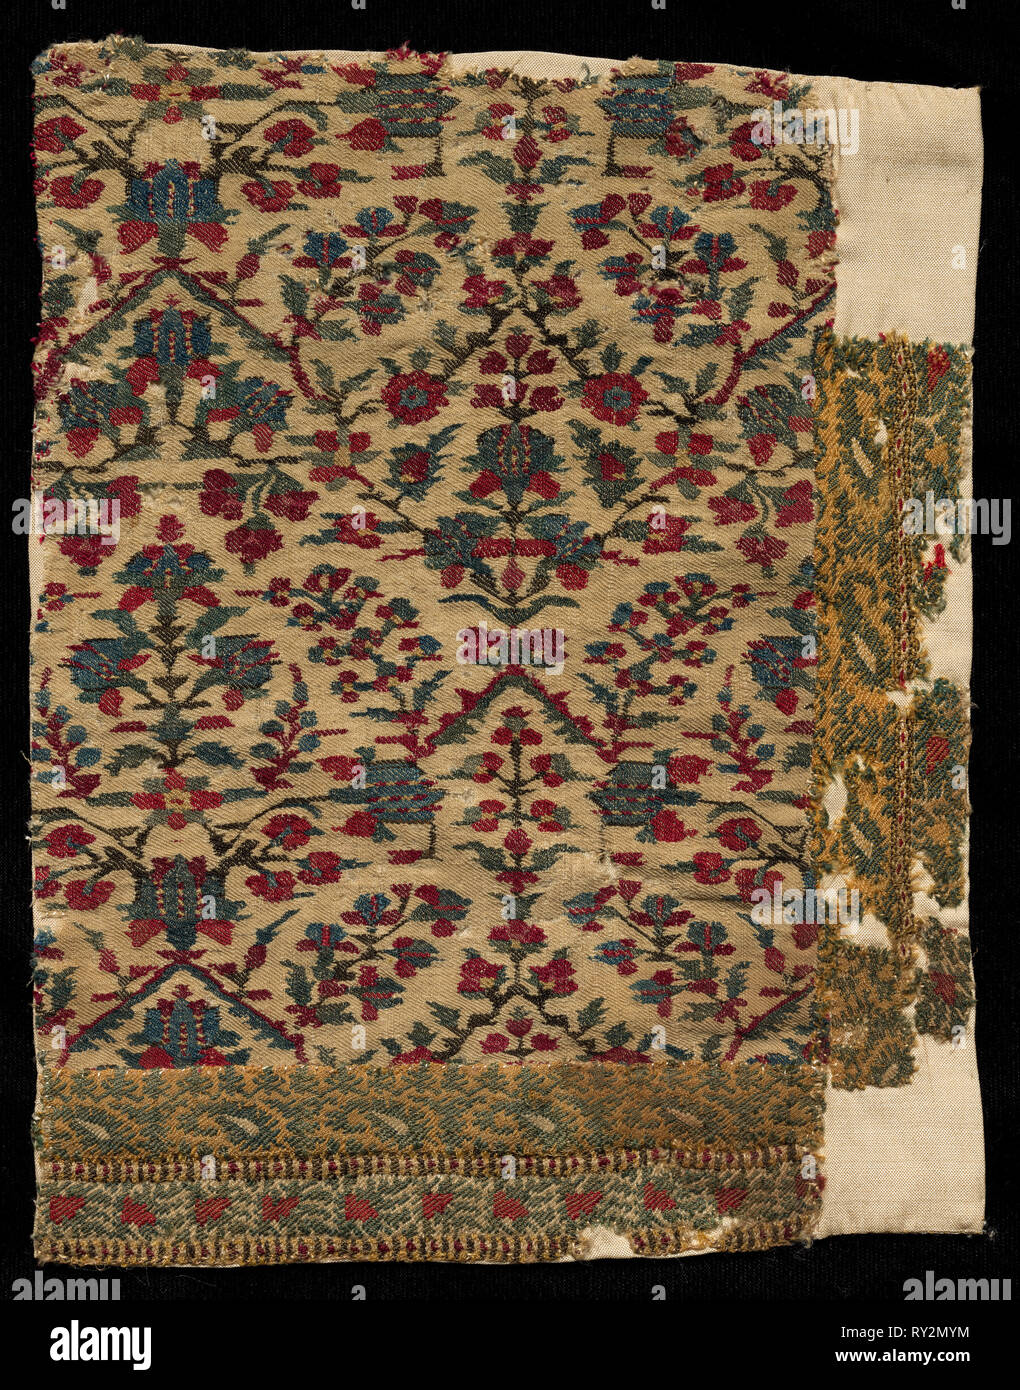 Fragment de la frontière d'un châle, fin des années 1700 - début des années 1800. L'Inde, au Cachemire, fin du xviiie - début du xixe siècle. Sergé tapisserie ; laine ; total : 23,5 x 17,8 cm (9 1/4 x 7 in Banque D'Images